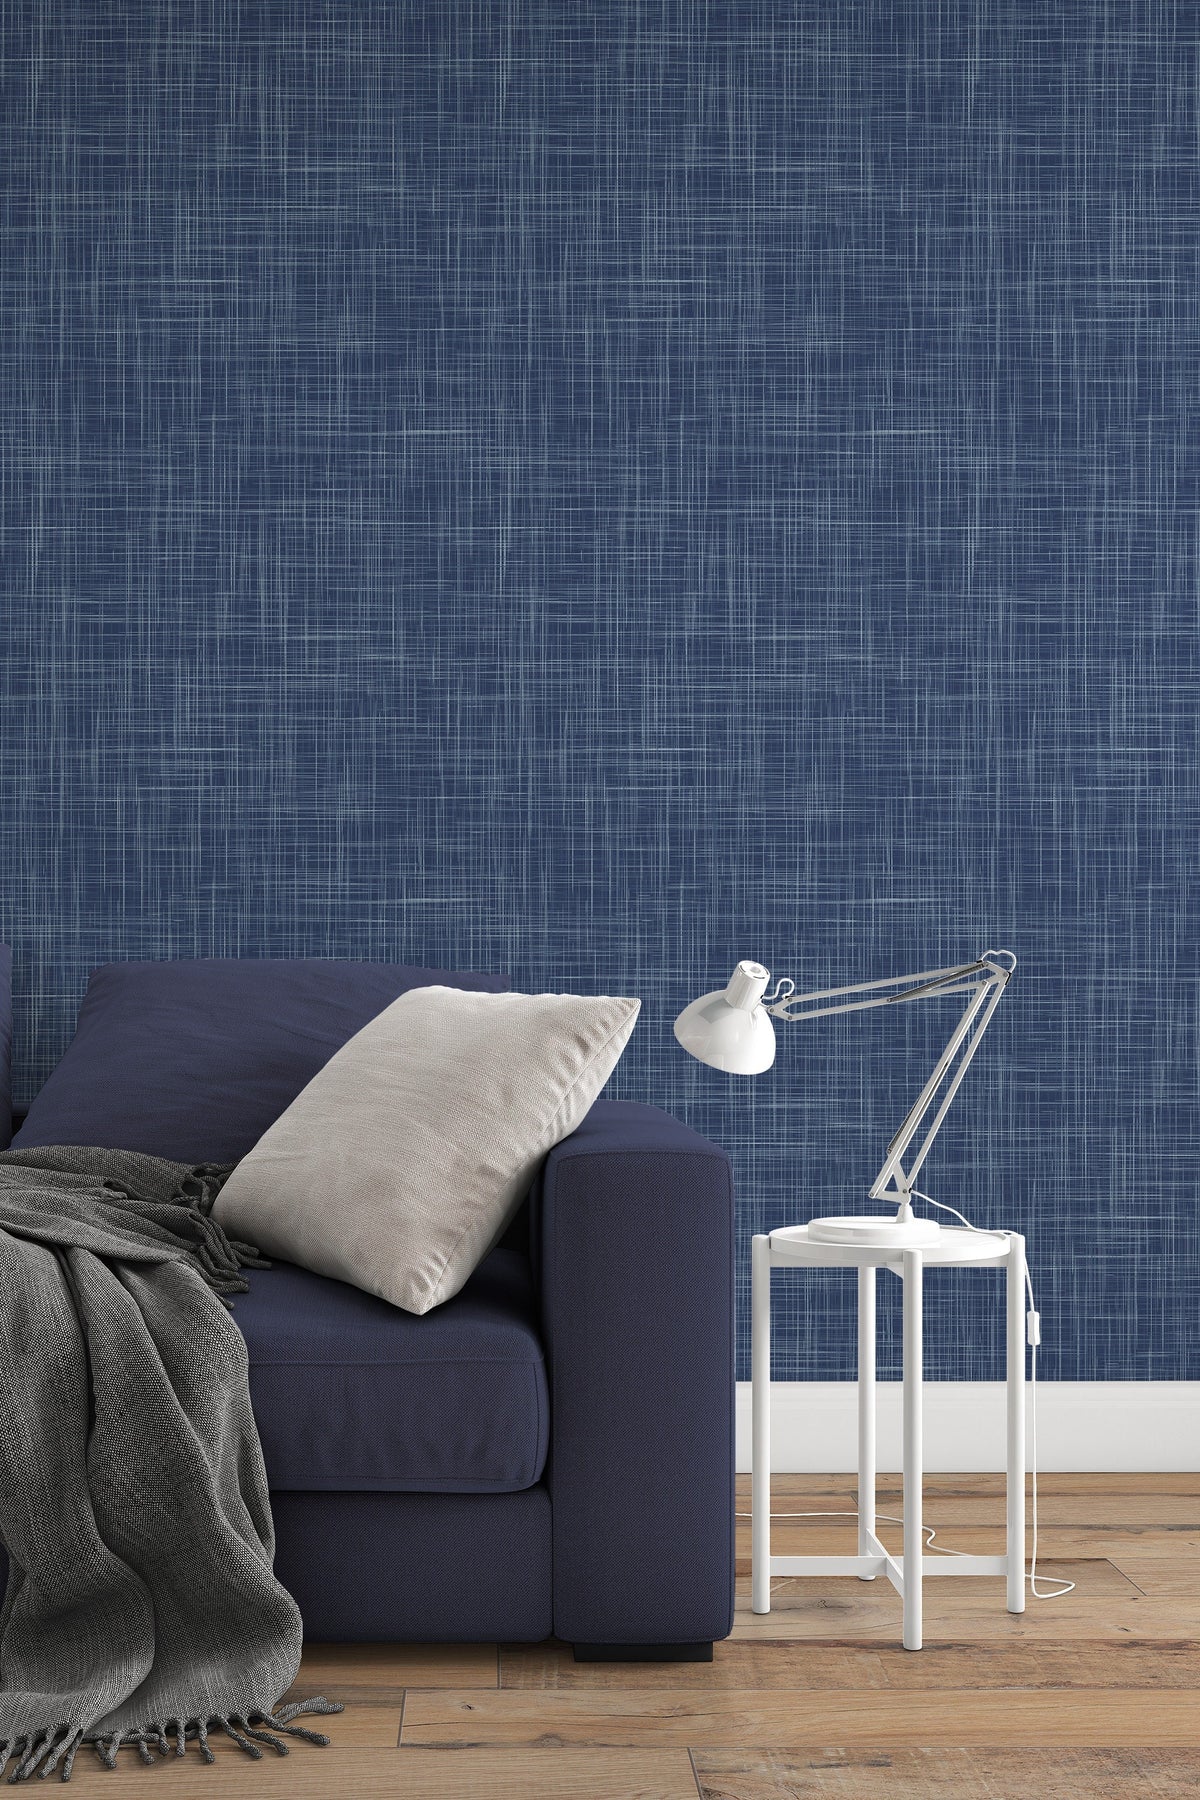 Premium Photo | Abstract dark blue with grunge soft texture background  darker soft blue texture wallpaper